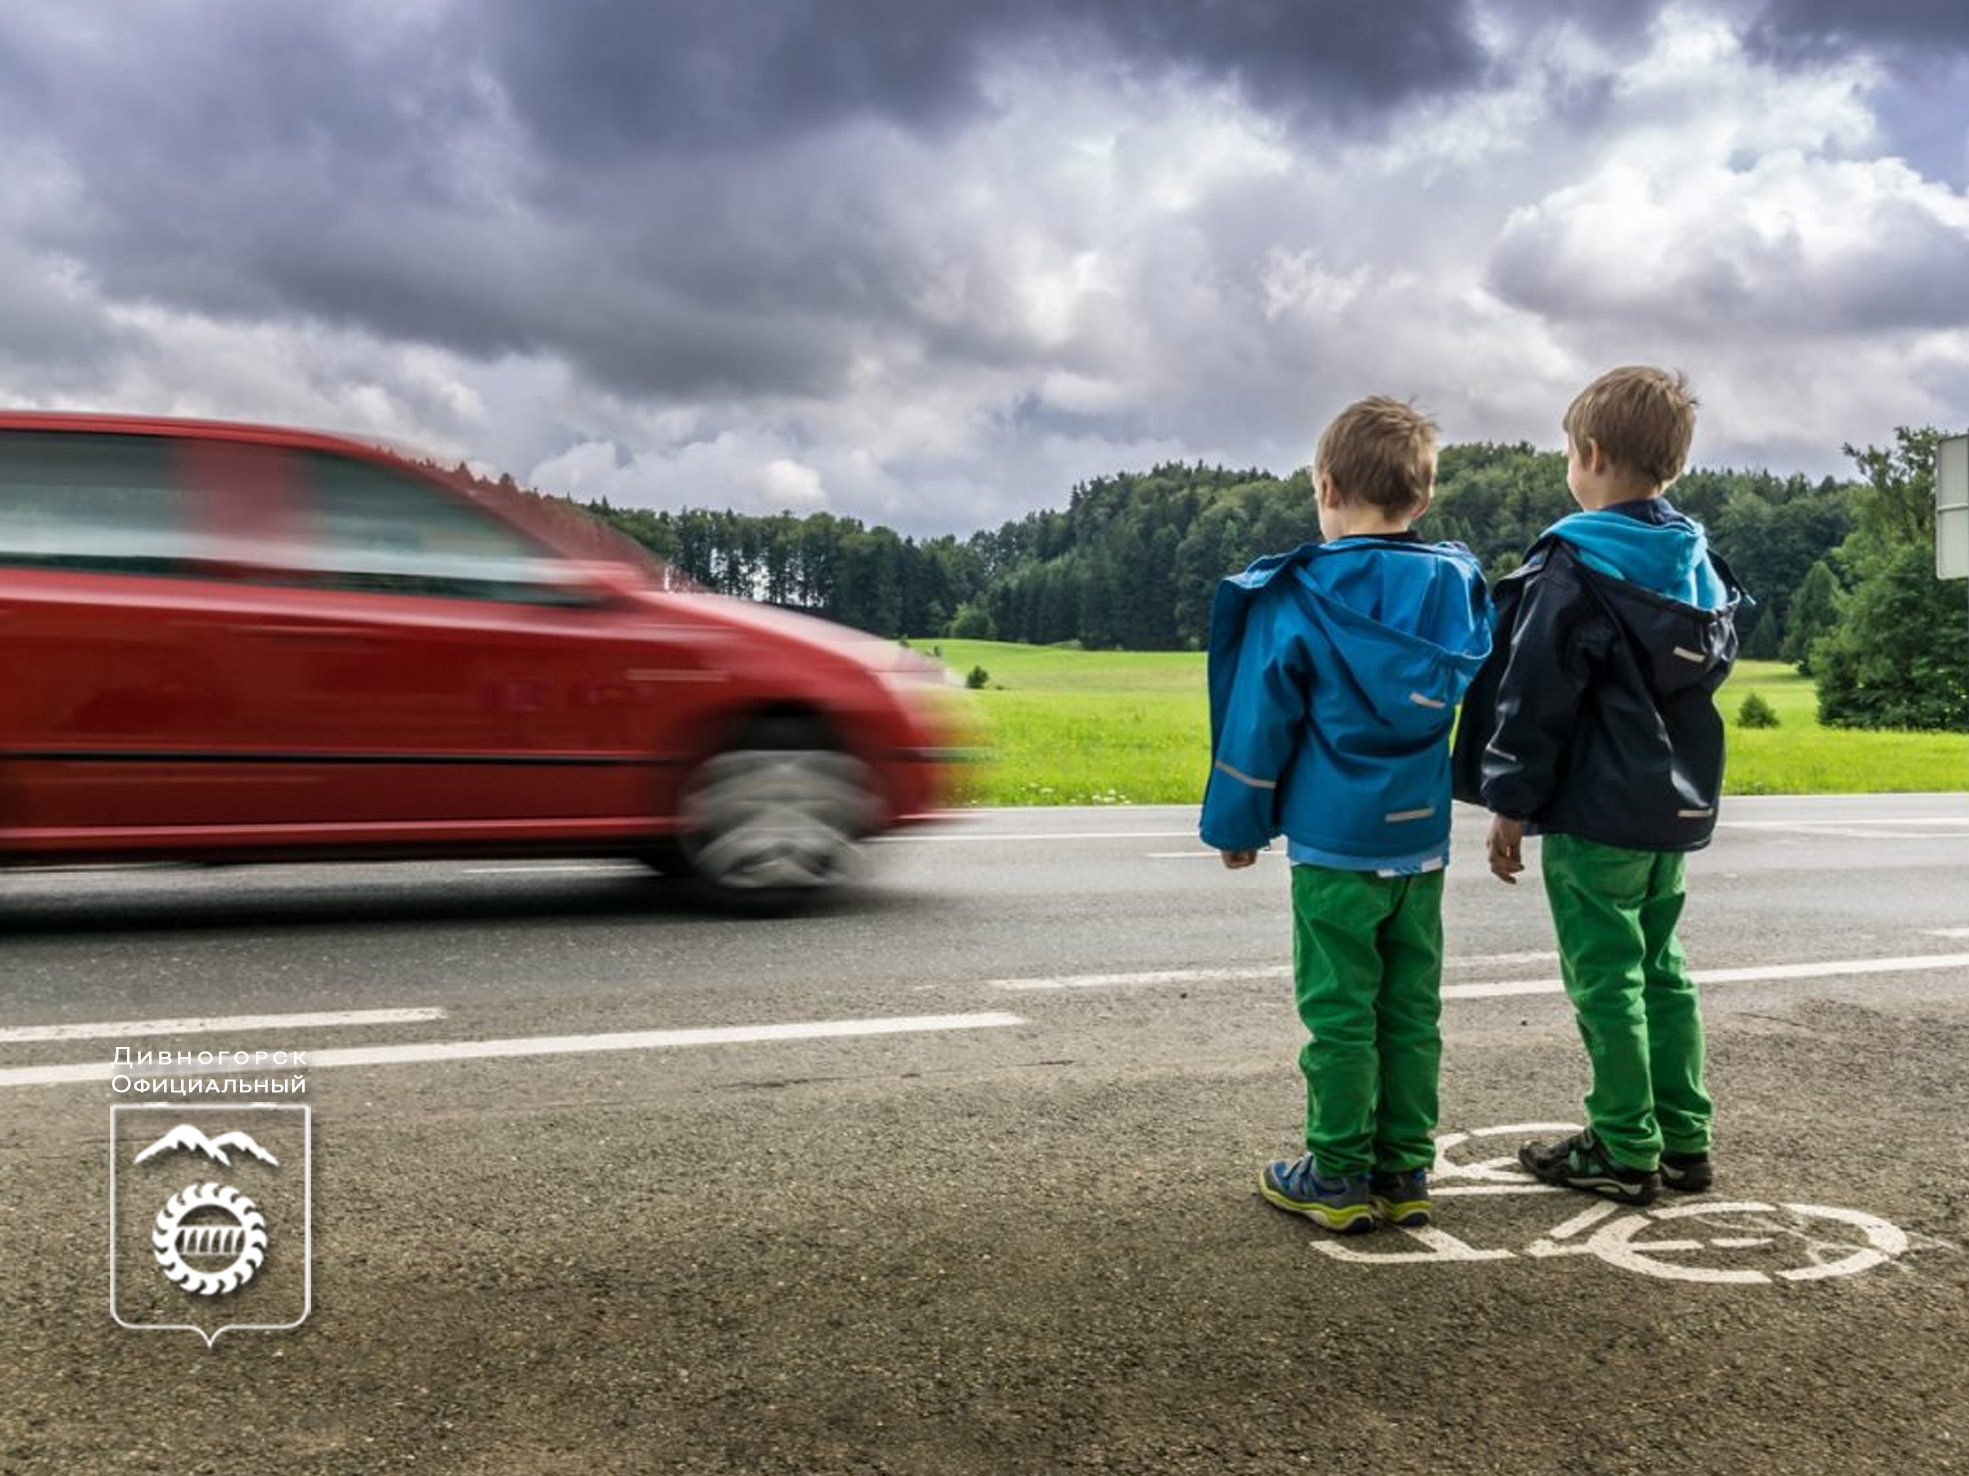 Опасности в жизни детей. Дети на дороге. Безопасность на дороге для детей. Дороги для детей. Детский травматизм на дорогах.